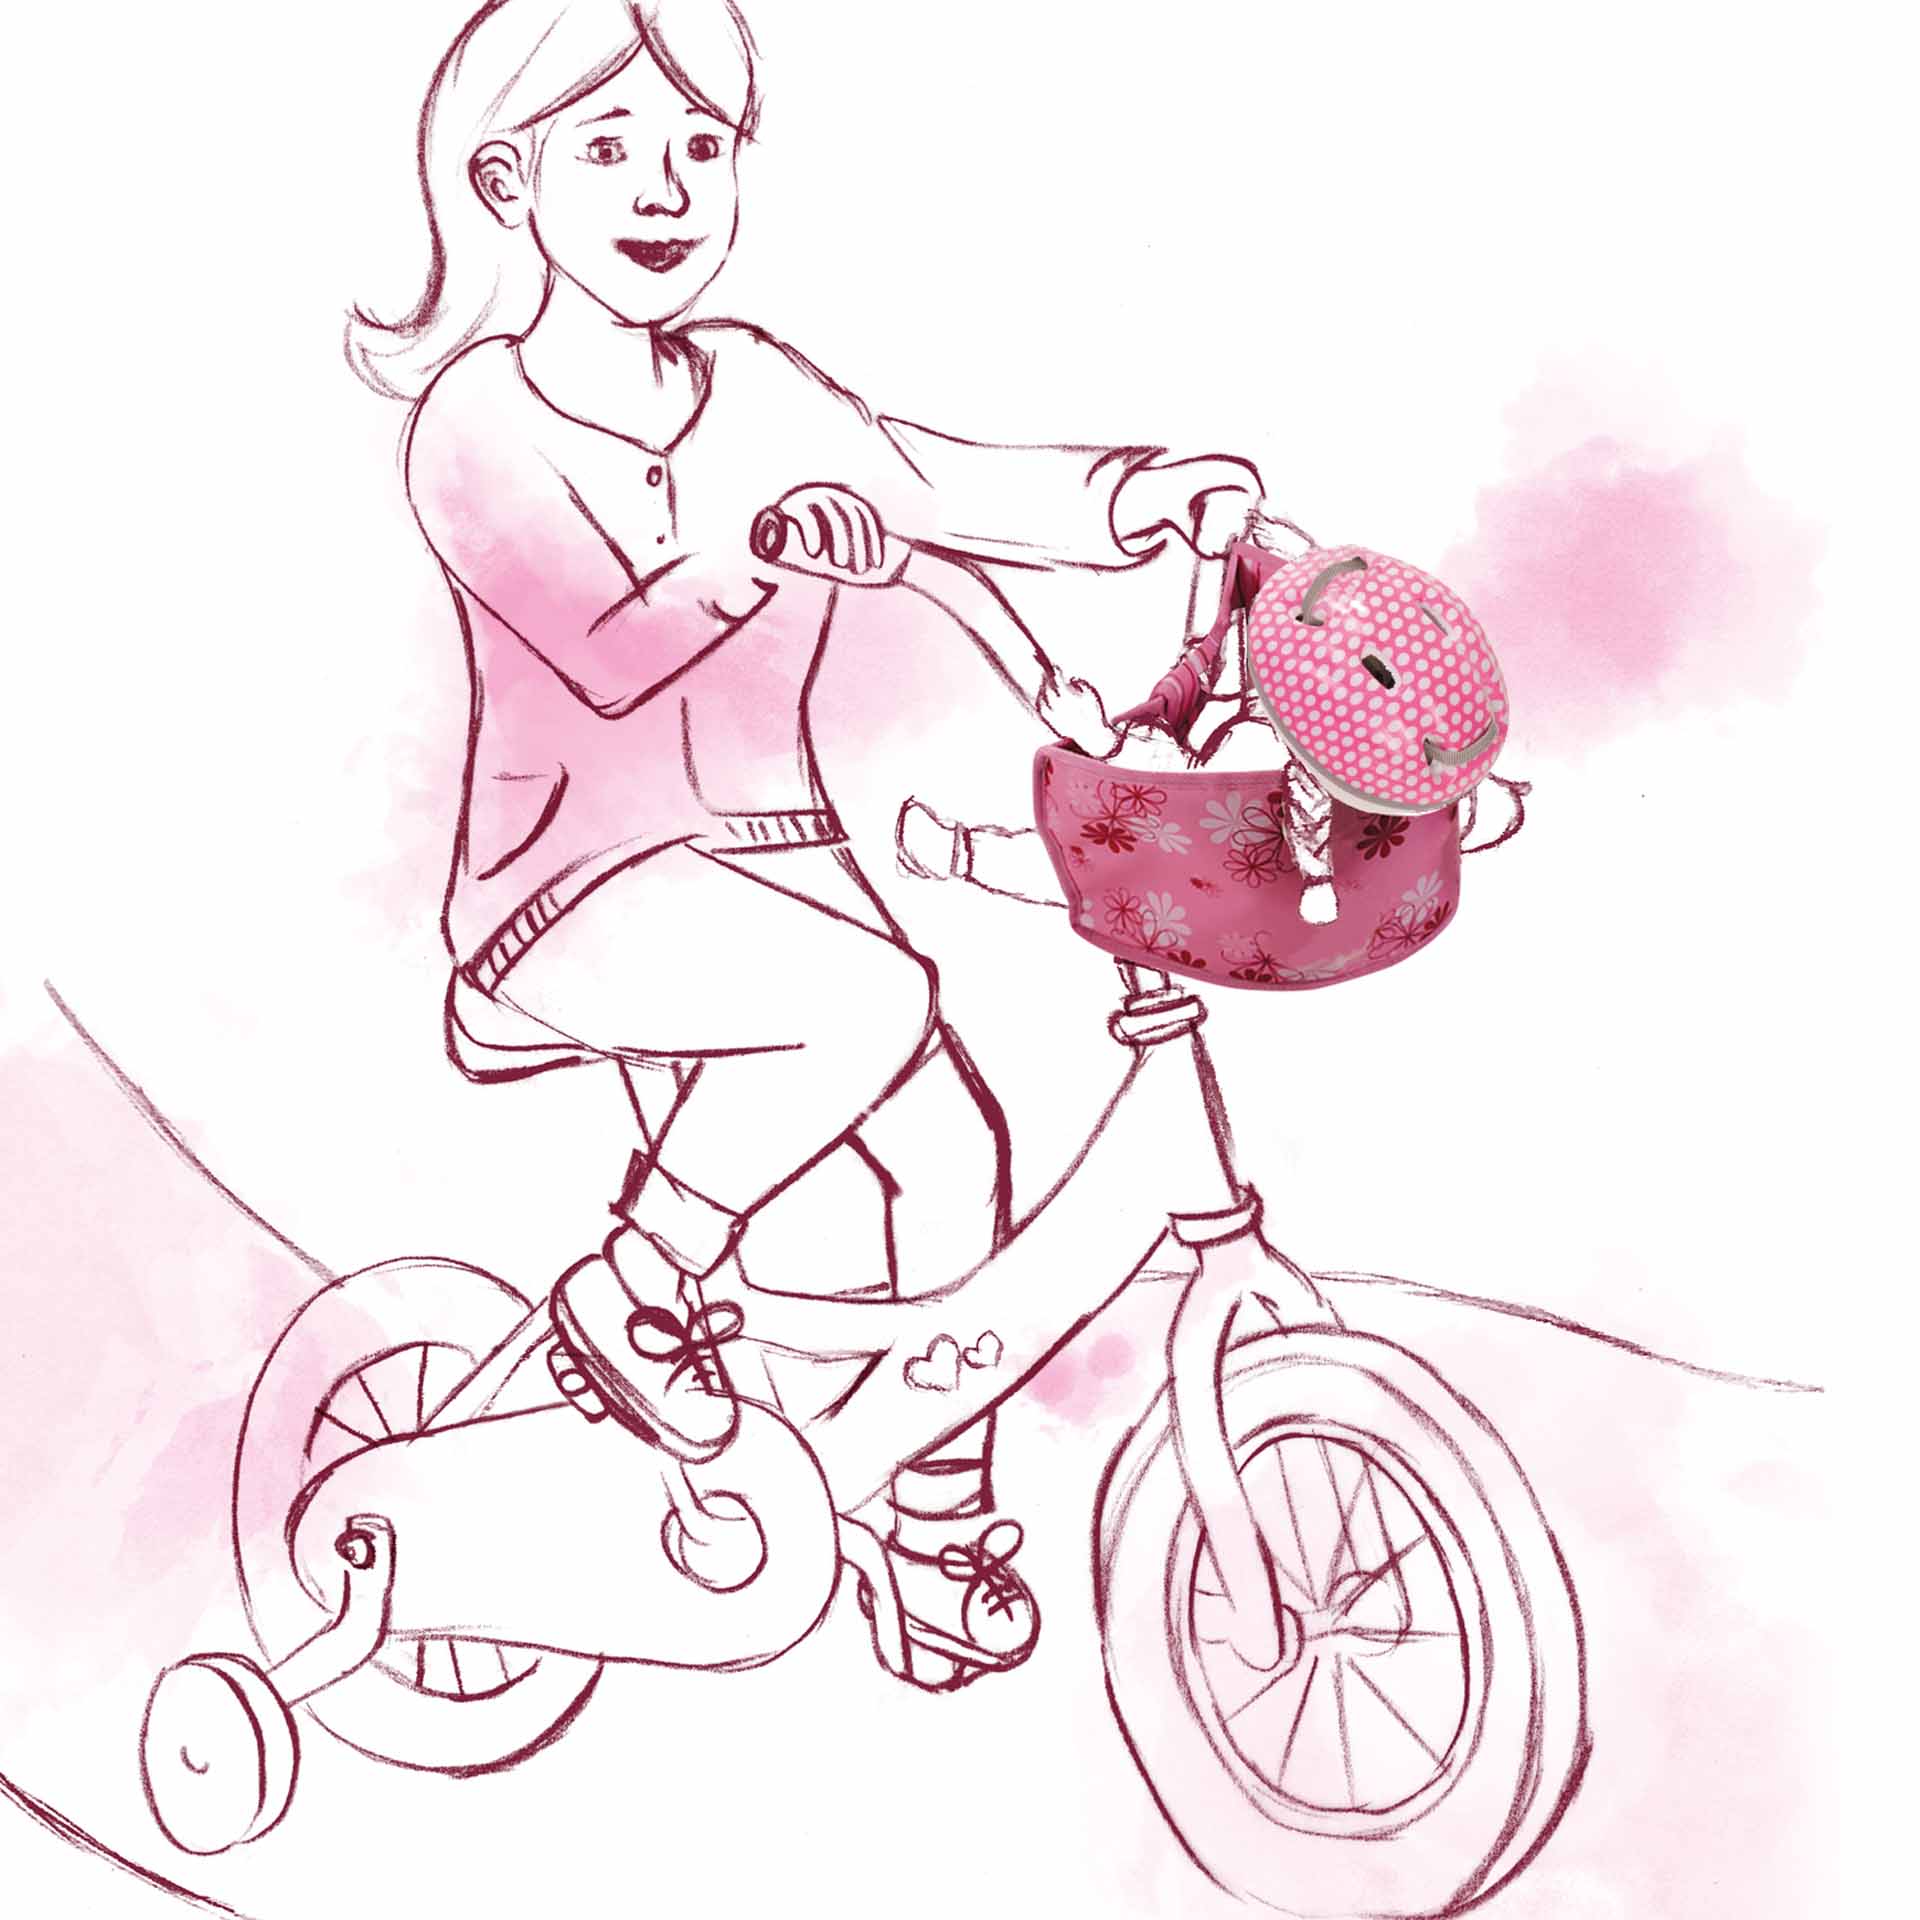 fahrradhelm-reithelm-rollerhelm-goetz-zeichnung